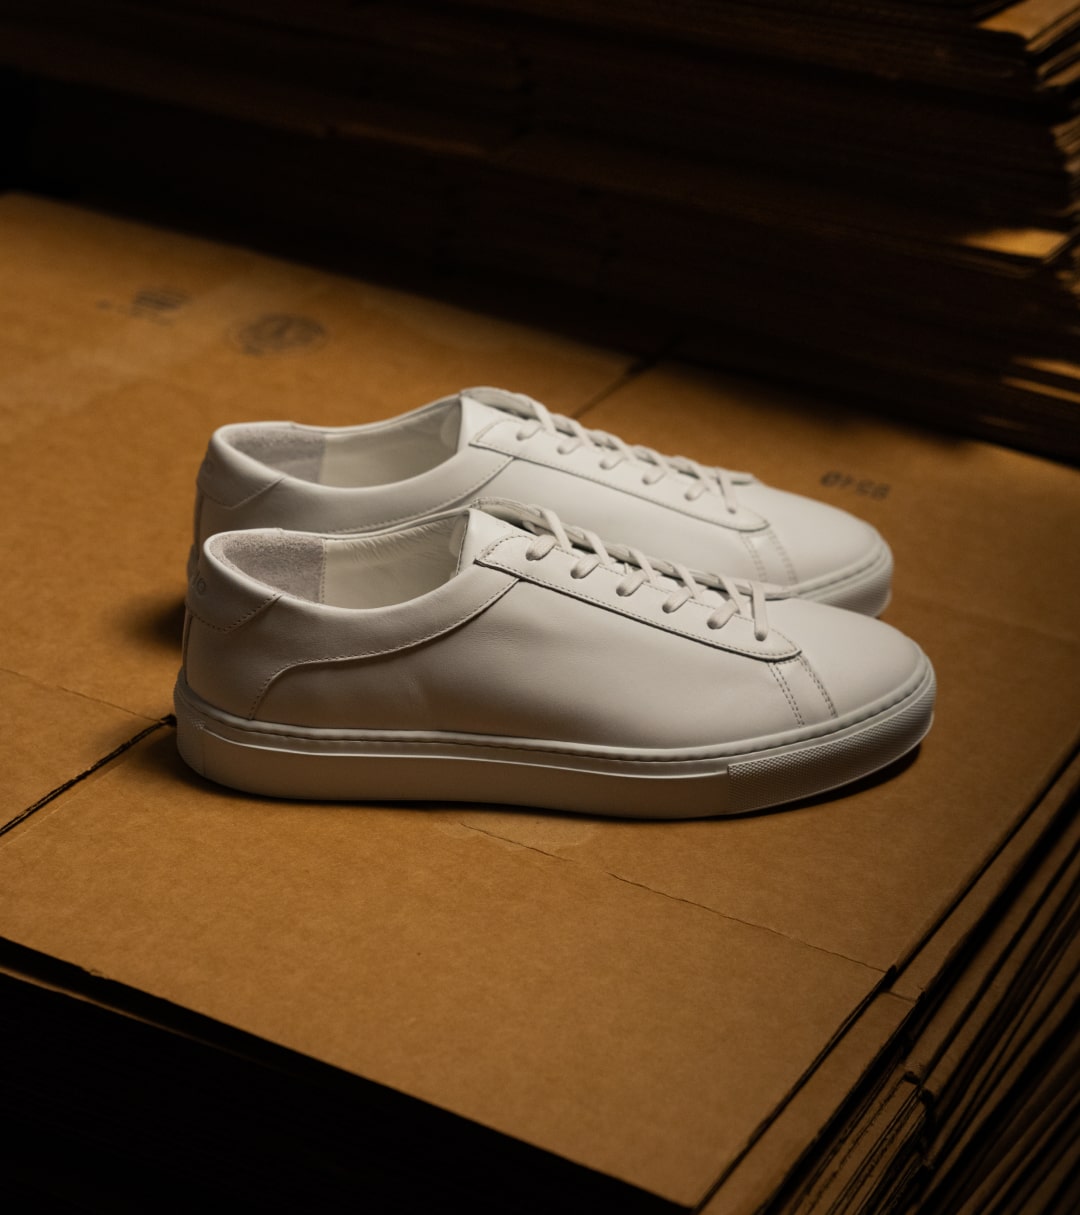 Men's Designer Breathable Mesh Sneakers in White | Martin Valen